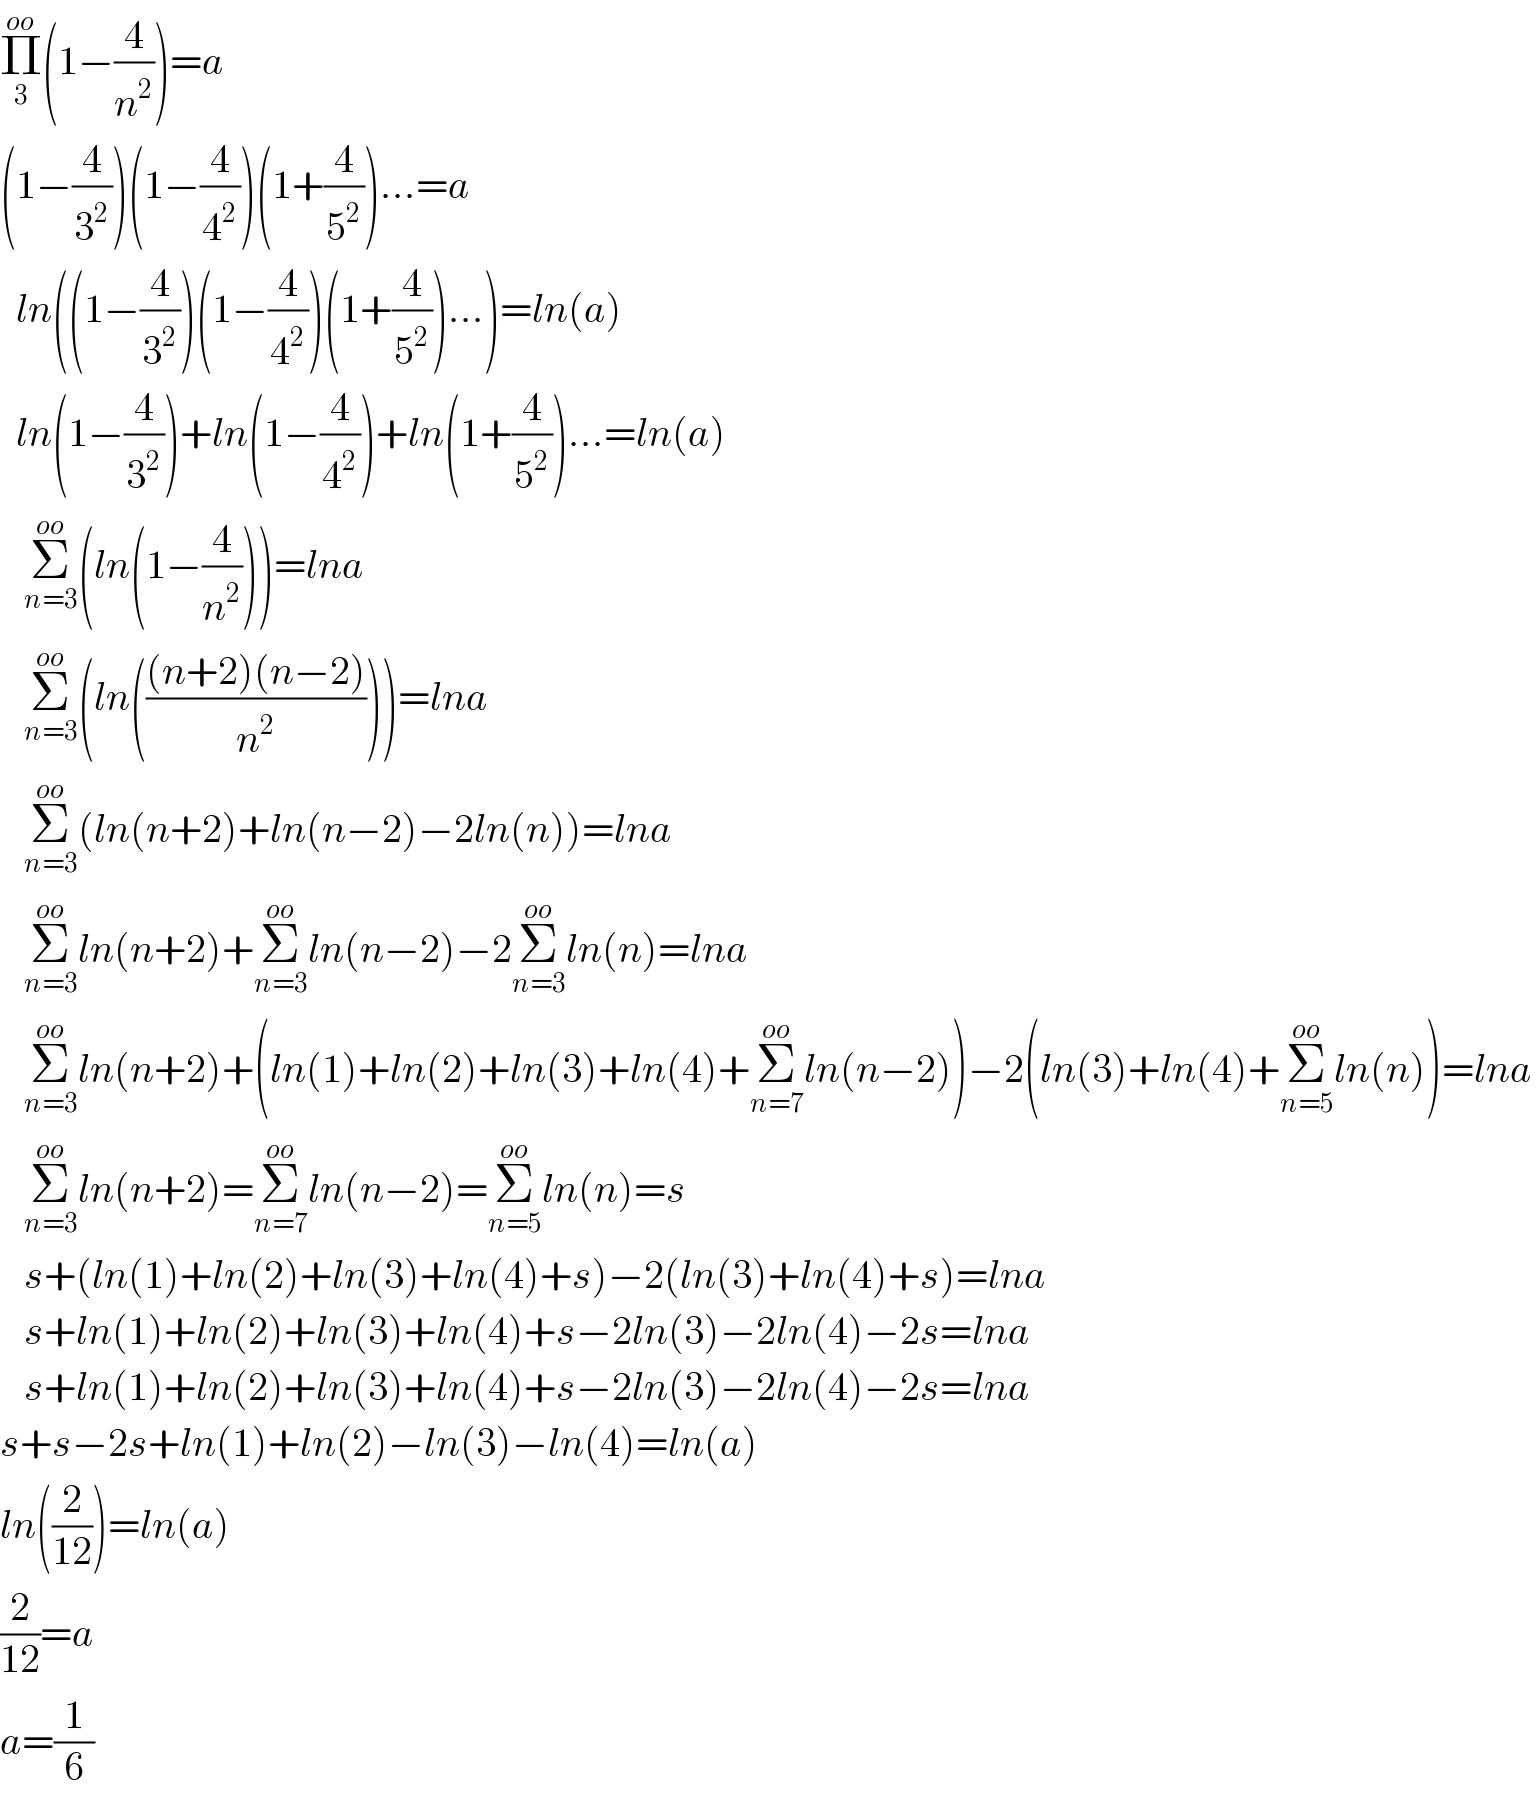 Π_3 ^(oo) (1−(4/n^2 ))=a   (1−(4/3^2 ))(1−(4/4^2 ))(1+(4/5^2 ))...=a    ln((1−(4/3^2 ))(1−(4/4^2 ))(1+(4/5^2 ))...)=ln(a)    ln(1−(4/3^2 ))+ln(1−(4/4^2 ))+ln(1+(4/5^2 ))...=ln(a)     Σ_(n=3) ^(oo) (ln(1−(4/n^2 )))=lna      Σ_(n=3) ^(oo) (ln((((n+2)(n−2))/n^2 )))=lna      Σ_(n=3) ^(oo) (ln(n+2)+ln(n−2)−2ln(n))=lna      Σ_(n=3) ^(oo) ln(n+2)+Σ_(n=3) ^(oo) ln(n−2)−2Σ_(n=3) ^(oo) ln(n)=lna      Σ_(n=3) ^(oo) ln(n+2)+(ln(1)+ln(2)+ln(3)+ln(4)+Σ_(n=7) ^(oo) ln(n−2))−2(ln(3)+ln(4)+Σ_(n=5) ^(oo) ln(n))=lna      Σ_(n=3) ^(oo) ln(n+2)=Σ_(n=7) ^(oo) ln(n−2)=Σ_(n=5) ^(oo) ln(n)=s     s+(ln(1)+ln(2)+ln(3)+ln(4)+s)−2(ln(3)+ln(4)+s)=lna      s+ln(1)+ln(2)+ln(3)+ln(4)+s−2ln(3)−2ln(4)−2s=lna      s+ln(1)+ln(2)+ln(3)+ln(4)+s−2ln(3)−2ln(4)−2s=lna   s+s−2s+ln(1)+ln(2)−ln(3)−ln(4)=ln(a)  ln((2/(12)))=ln(a)  (2/(12))=a  a=(1/6)  